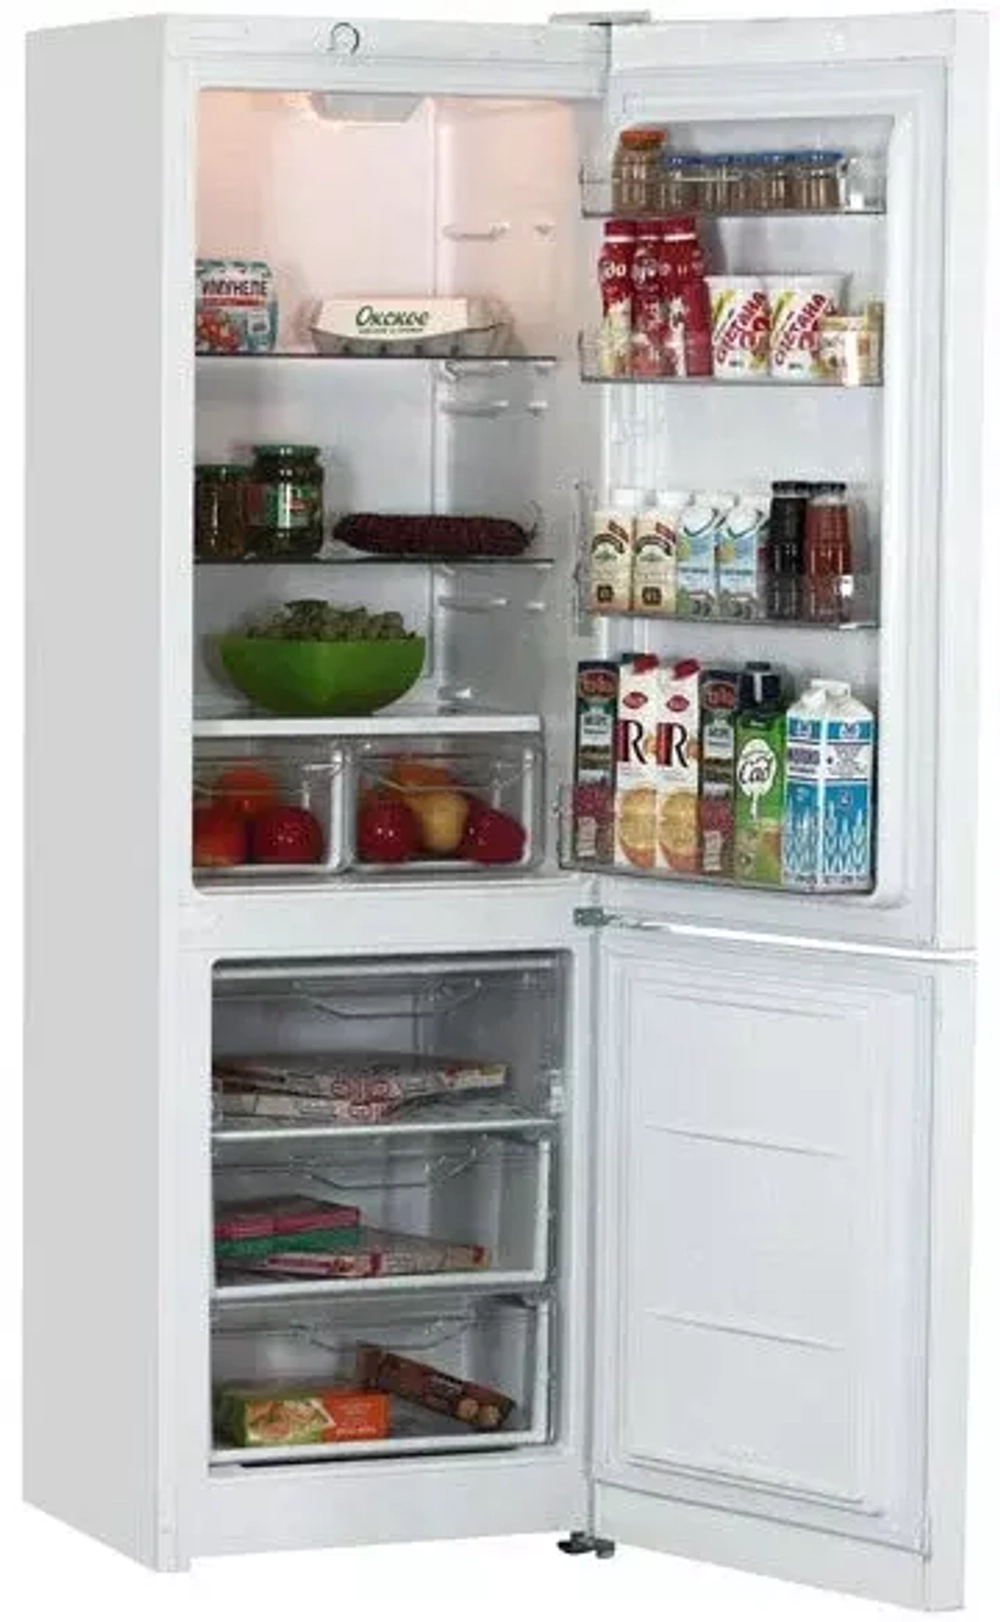 Холодильник с нижней морозильной камерой Indesit DS 318 W (MLN)